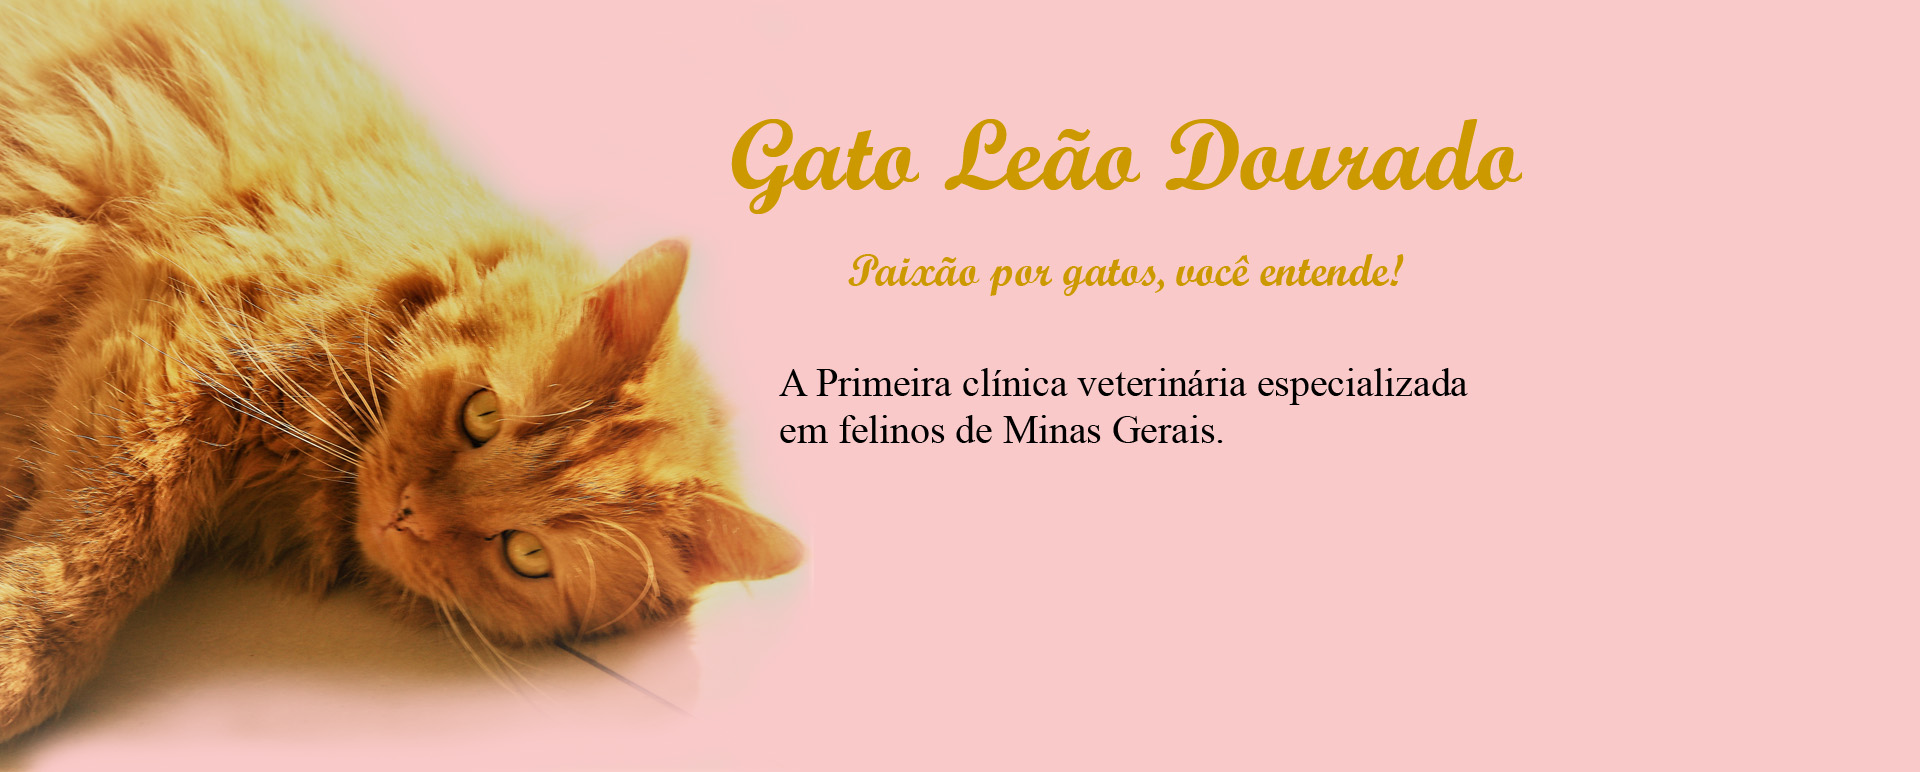  Clínica Gato Leão Dourado - Paixão por gatos você entende!